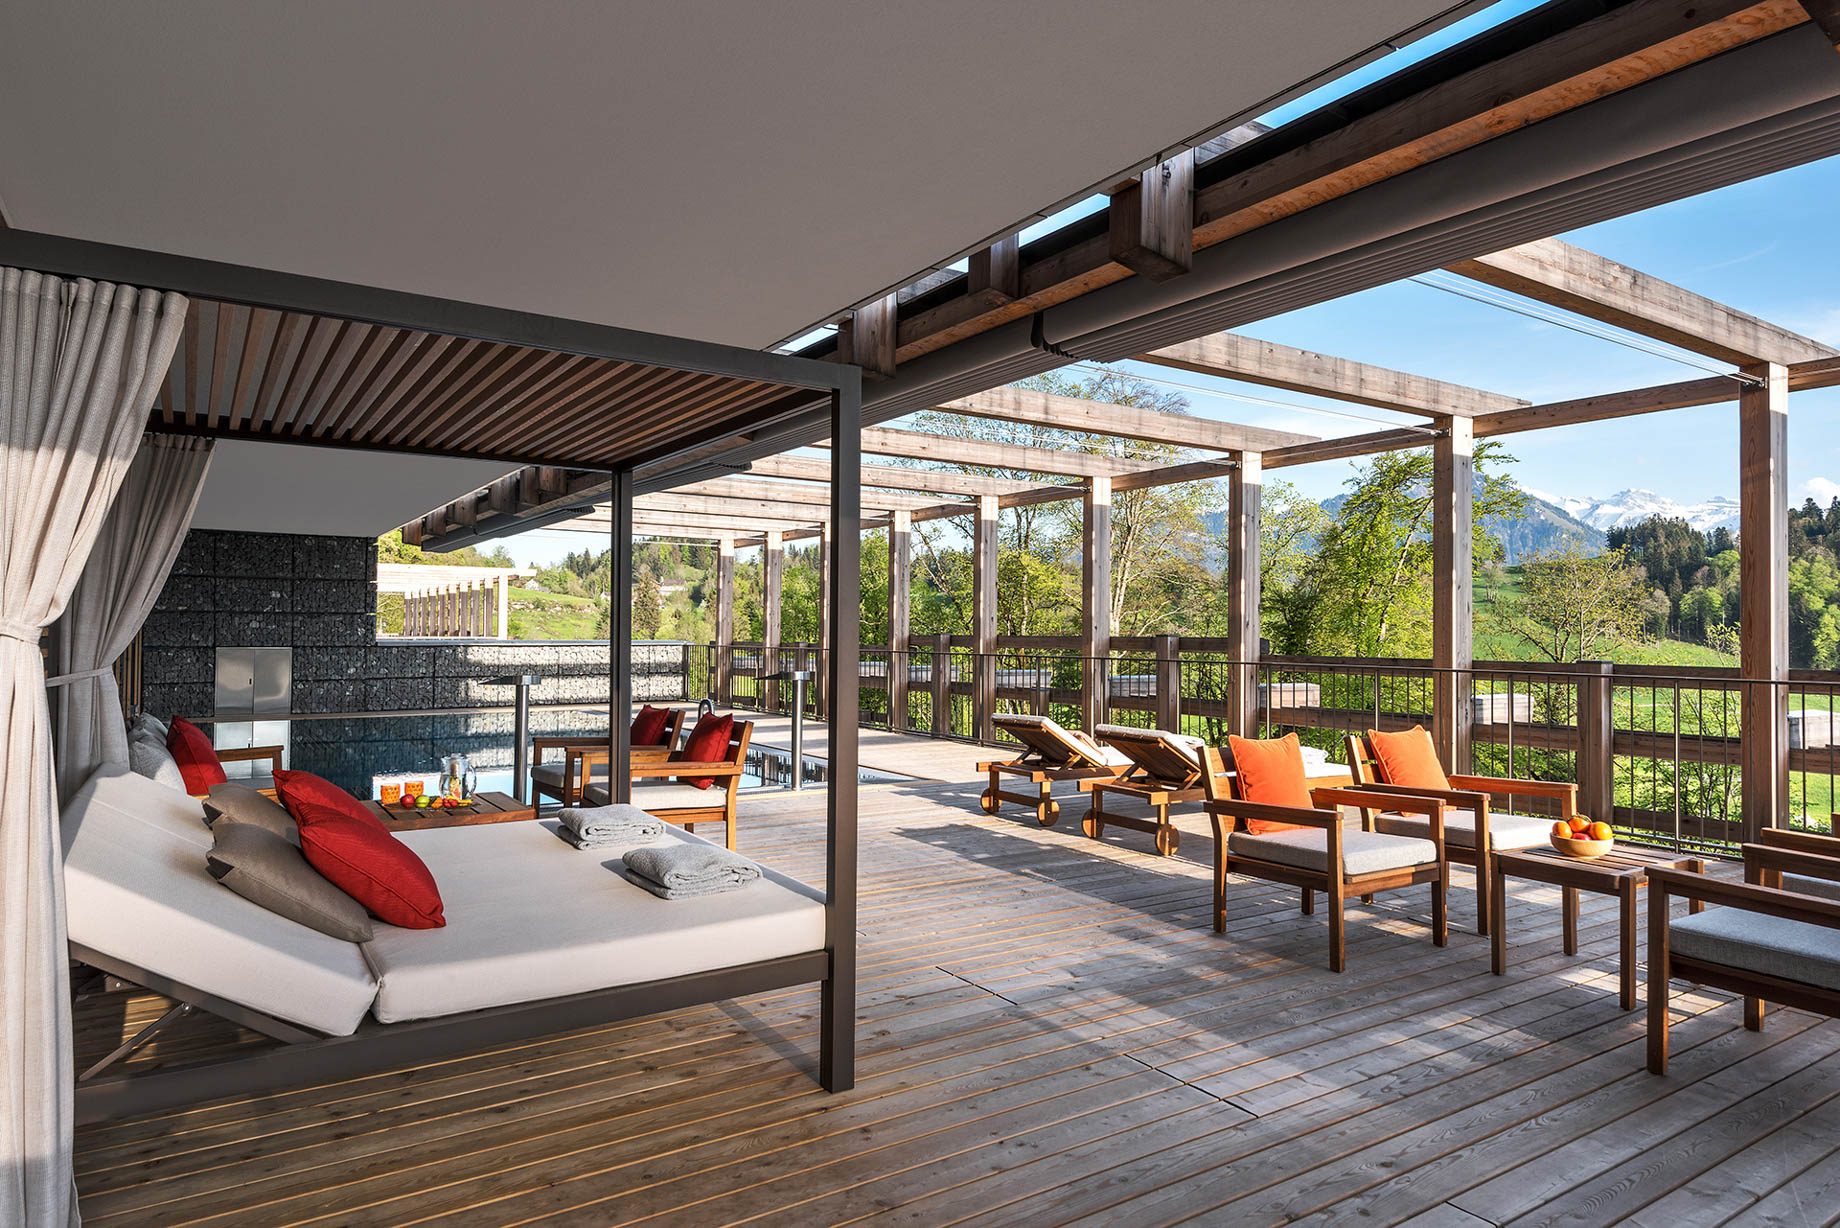 Waldhotel – Burgenstock Hotels & Resort – Obburgen, Switzerland – Outdoor Pool Deck